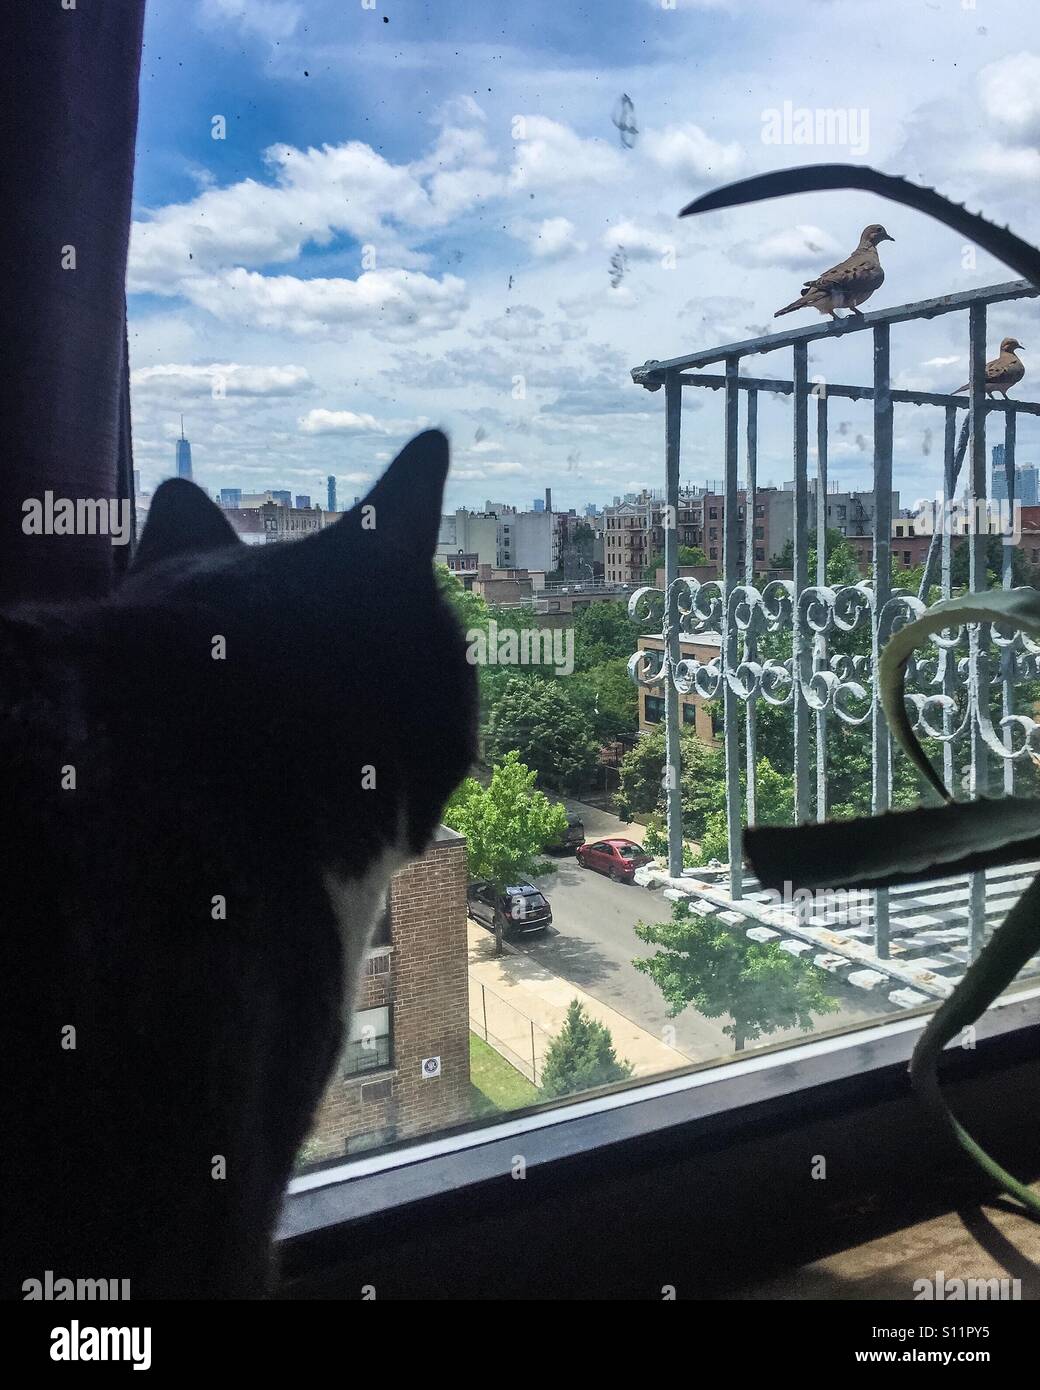 Tuxedo Katze in einer Wohnung Jagd auf Vögel auf einer Feuertreppe durch ein Fenster. Stockfoto